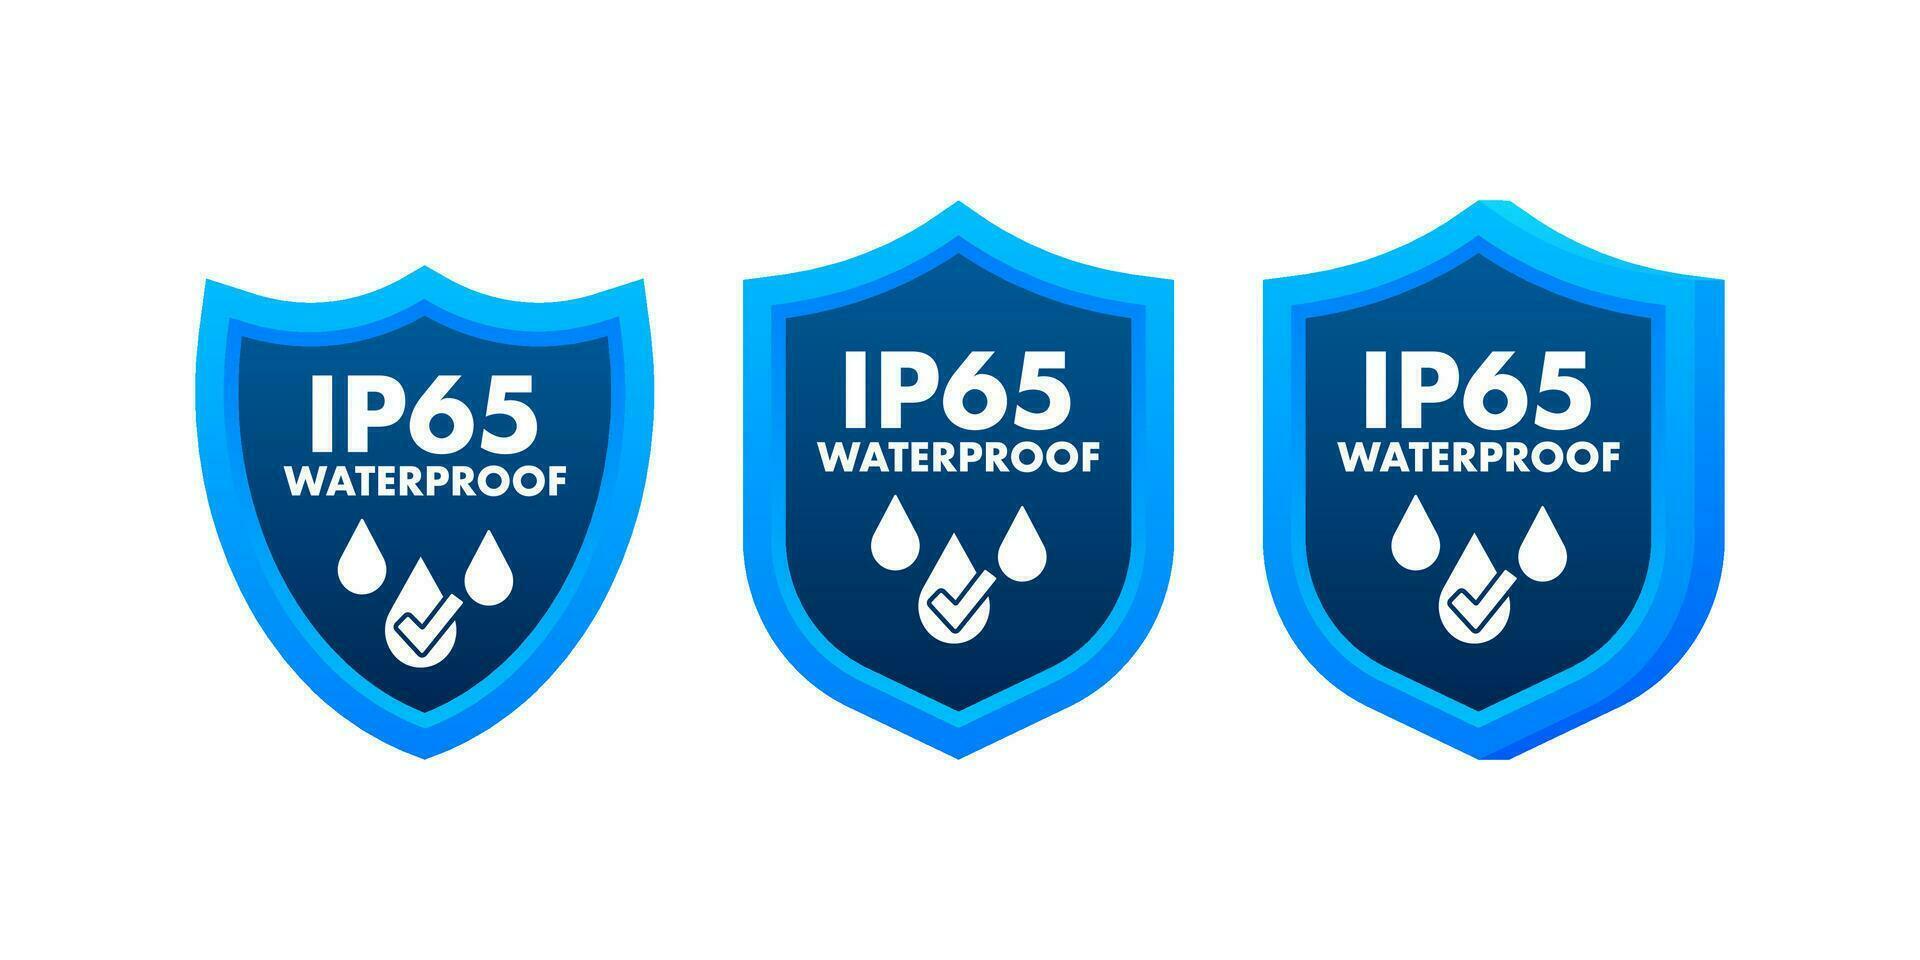 IP65 wasserdicht, Wasser Widerstand Niveau Information unterzeichnen. vektor